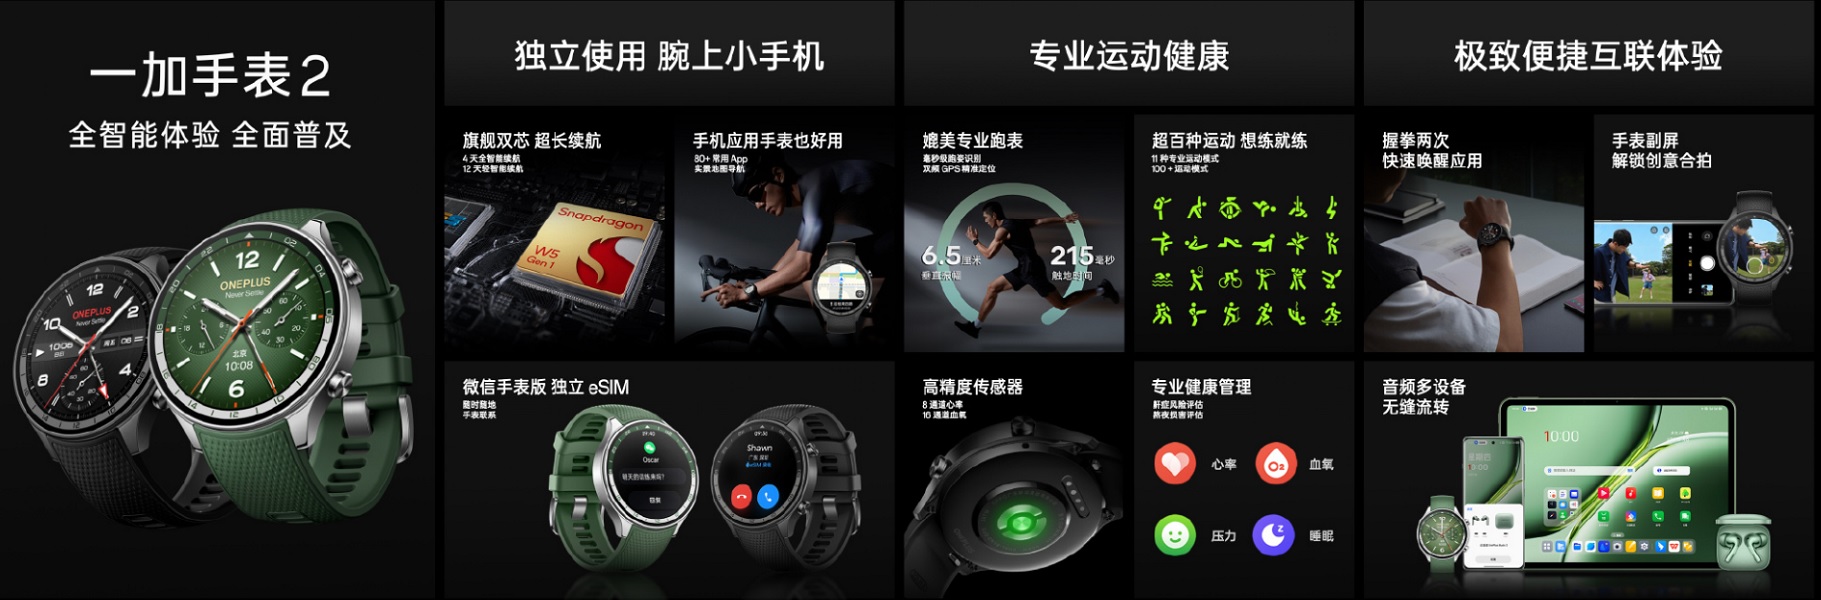 La OnePlus Watch 2 en Chine apporte une navigation cartographique améliorée, des capteurs précis, la prise en charge d'Android et d'iOS.